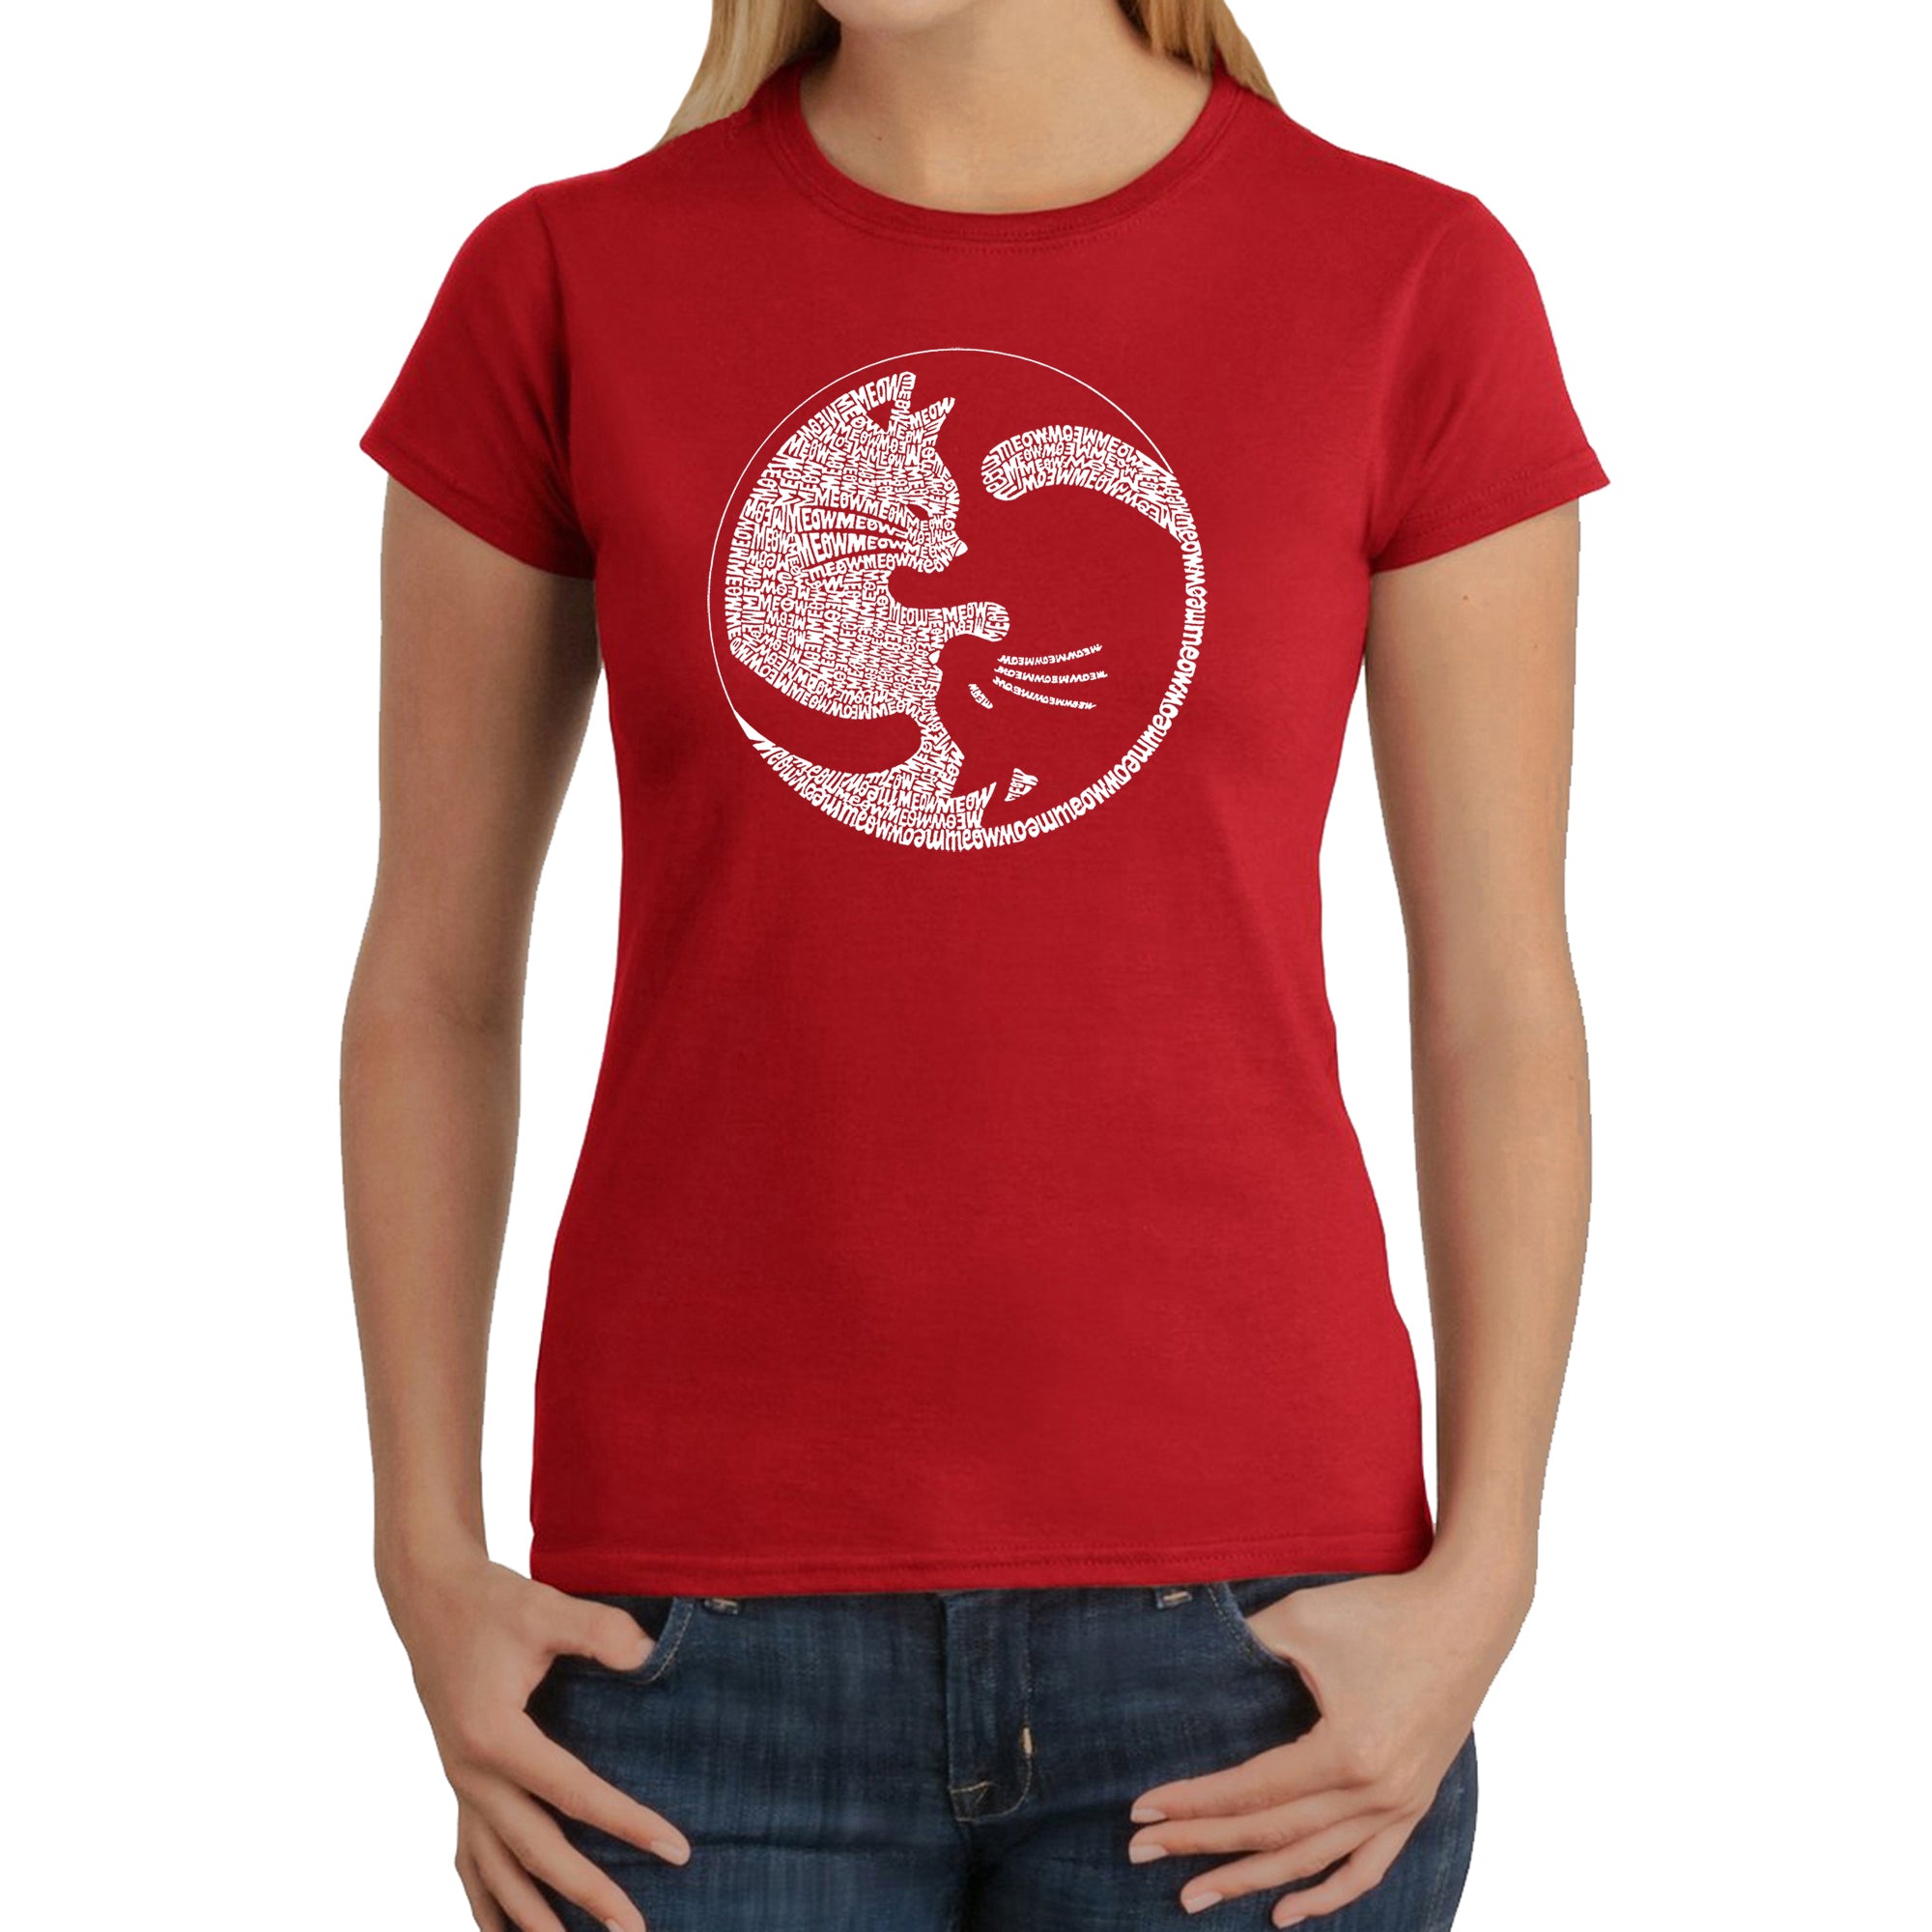 Yin Yang Cat - Women's Word Art T-Shirt - Red - XS